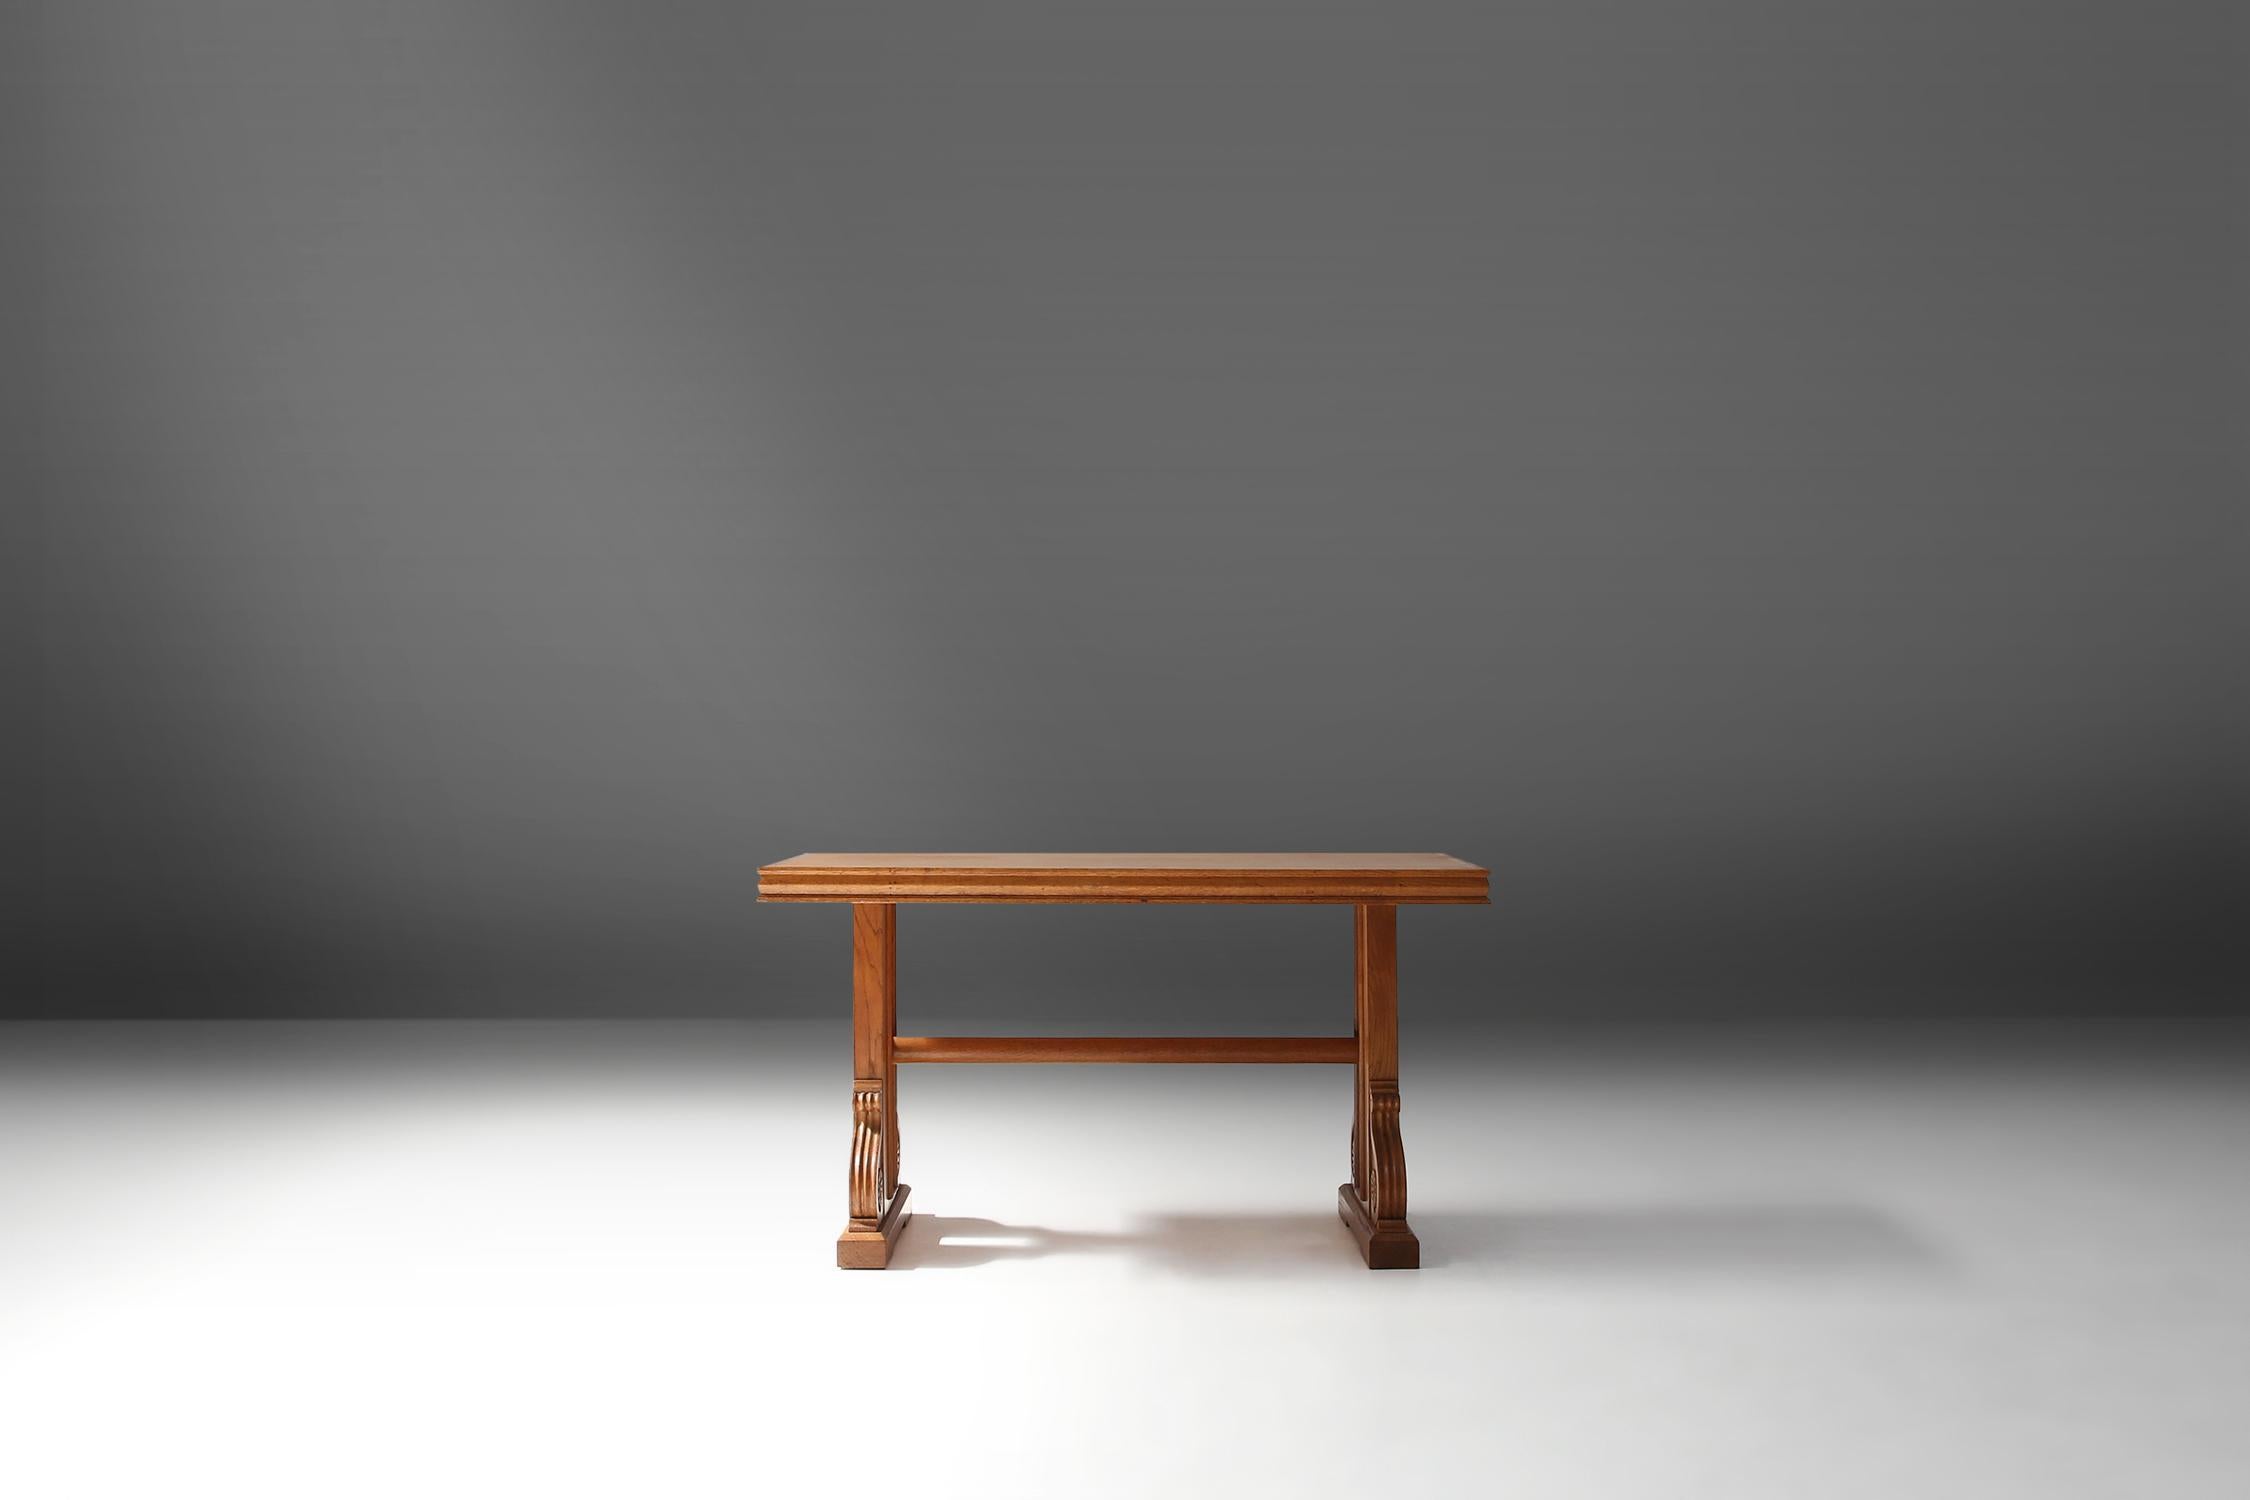 Table basse Art Déco belge en bois de chêne massif.
Magnifique table qui représente la période Art Déco des années 1940.